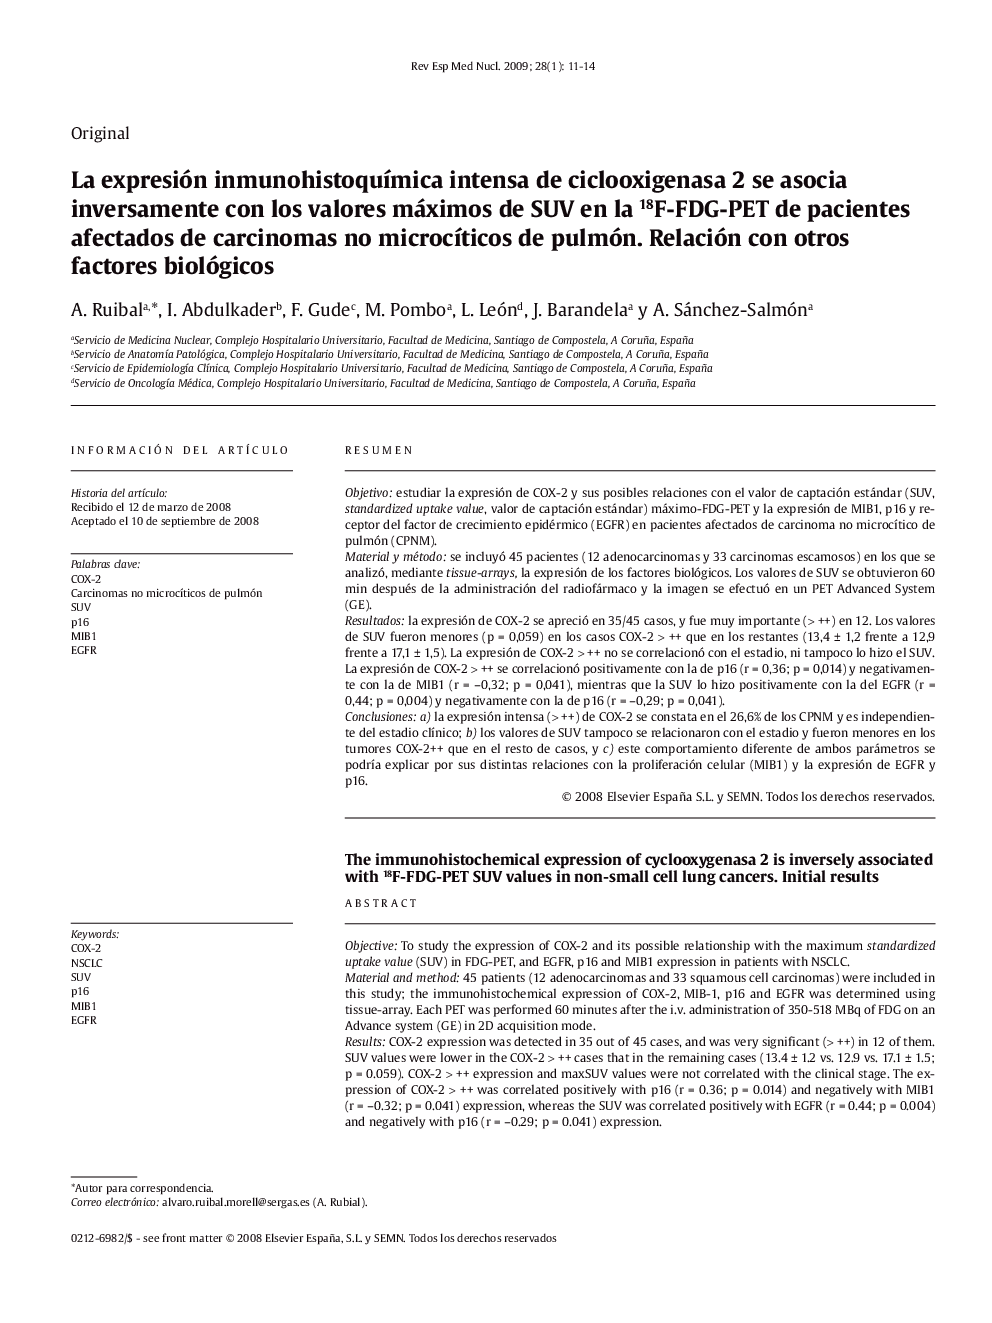 La expresión inmunohistoquÃ­mica intensa de ciclooxigenasa 2 se asocia inversamente con los valores máximos de SUV en la 18F-FDG-PET de pacientes afectados de carcinomas no microcÃ­ticos de pulmón. Relación con otros factores biológicos